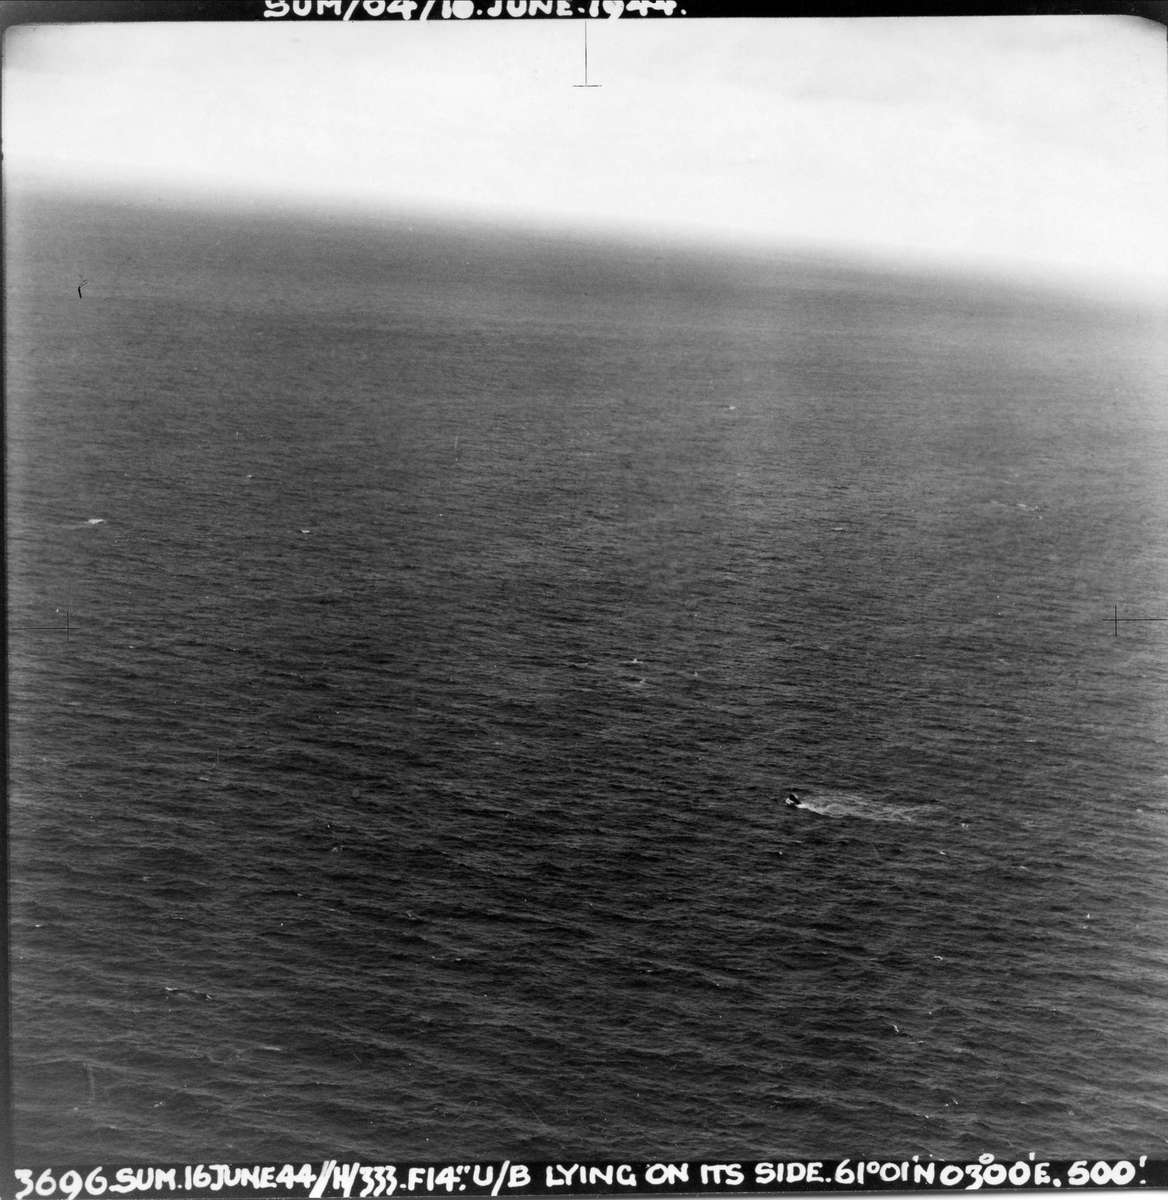 En Mosquito fra 333 skvadronen angriper en tysk ubåt vest for Sognefjorden, 16. juni 1944. Pilot på flyet er major E. U. Johansen. Ubåten er uskadeliggjort og ligger på siden.